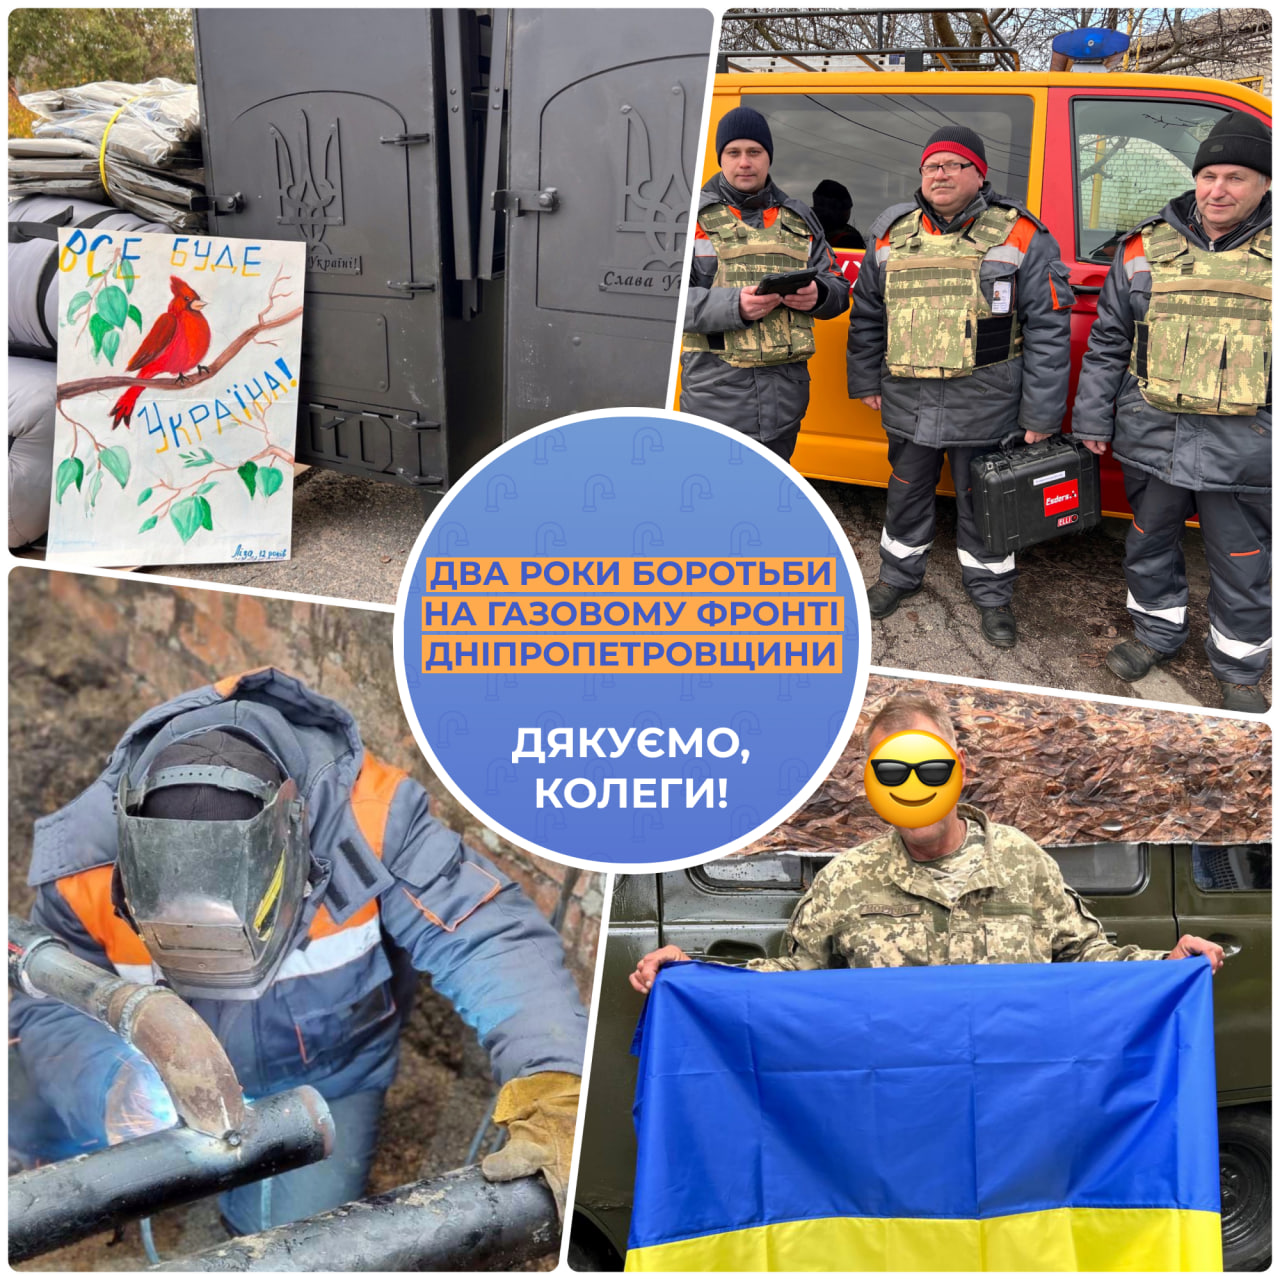 730 днів боротьби за незалежність: як газовики Дніпропетровщини тримають власний «фронт»